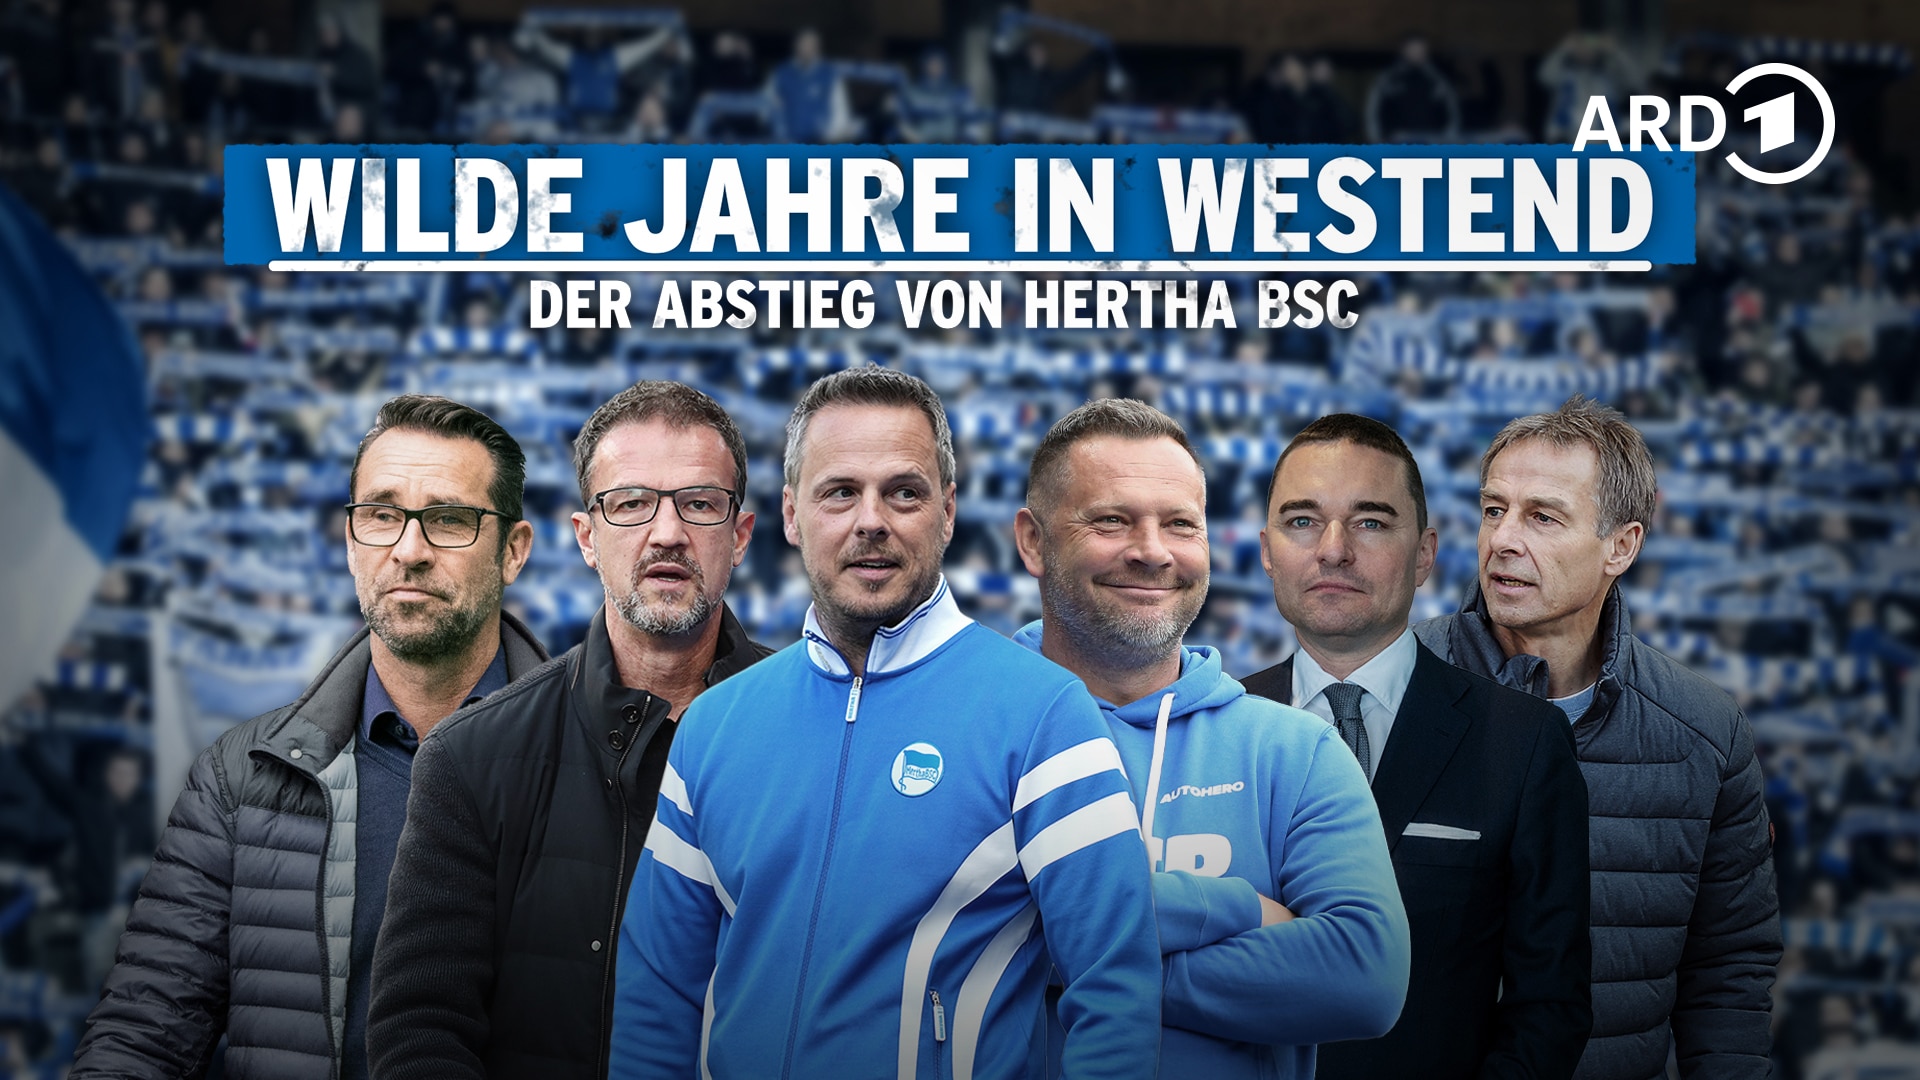 Wilde Jahre in Westend &middot; Der Abstieg von Hertha BSC